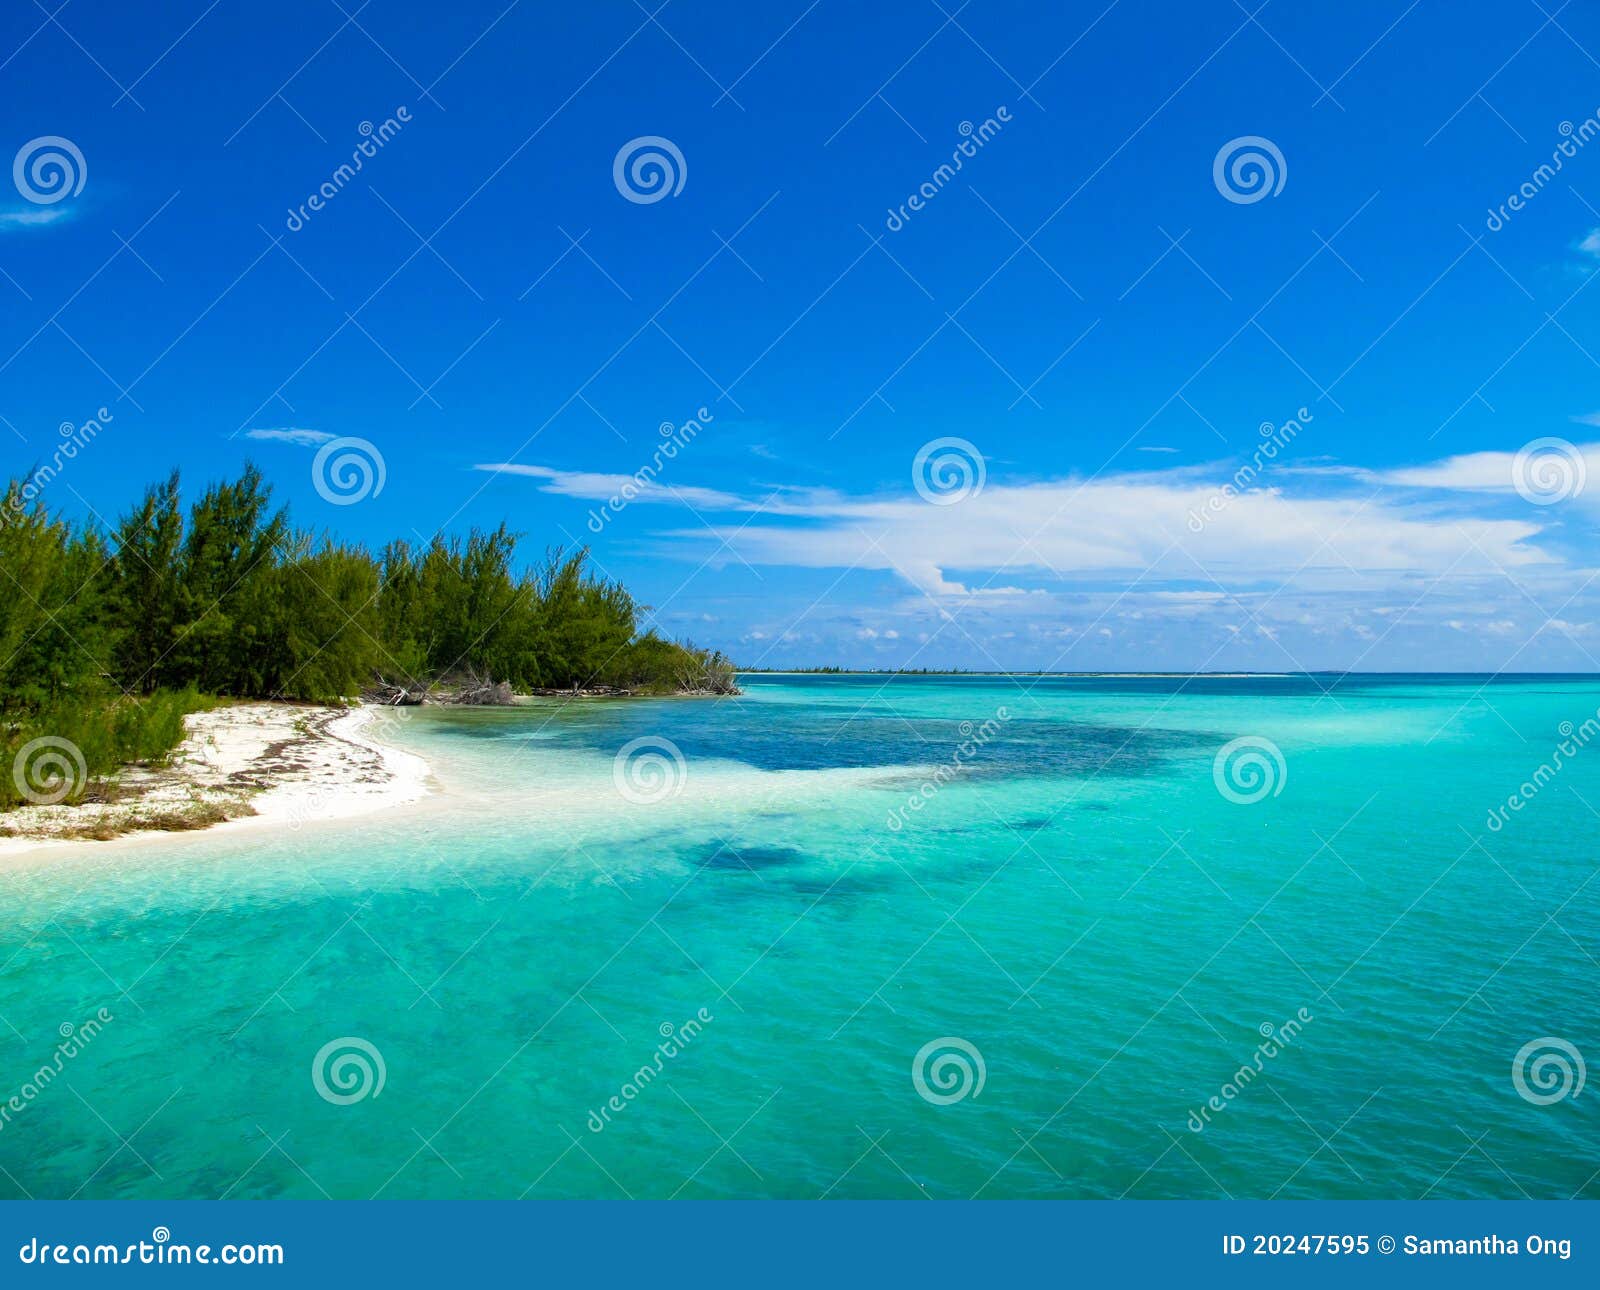 caribbean sea - playa paraiso, cayo largo, cuba